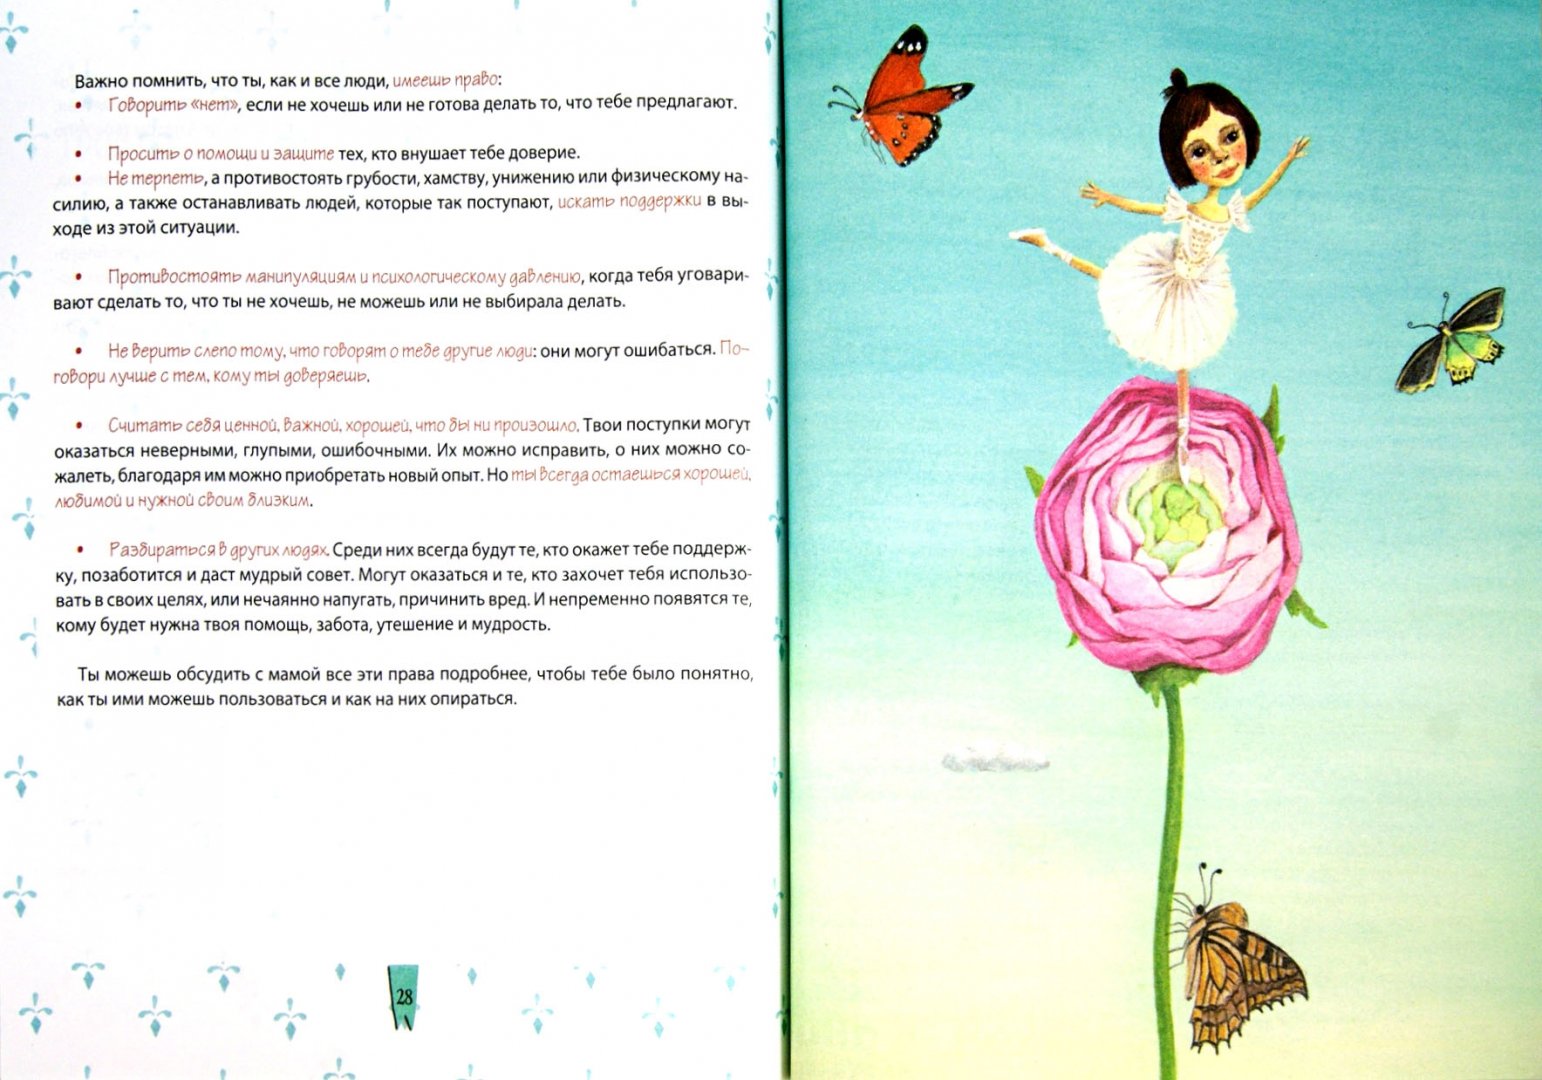 Иллюстрация 1 из 12 для Почти неволшебные превращения. Книга для мам и дочерей - Ирина Млодик | Лабиринт - книги. Источник: Лабиринт